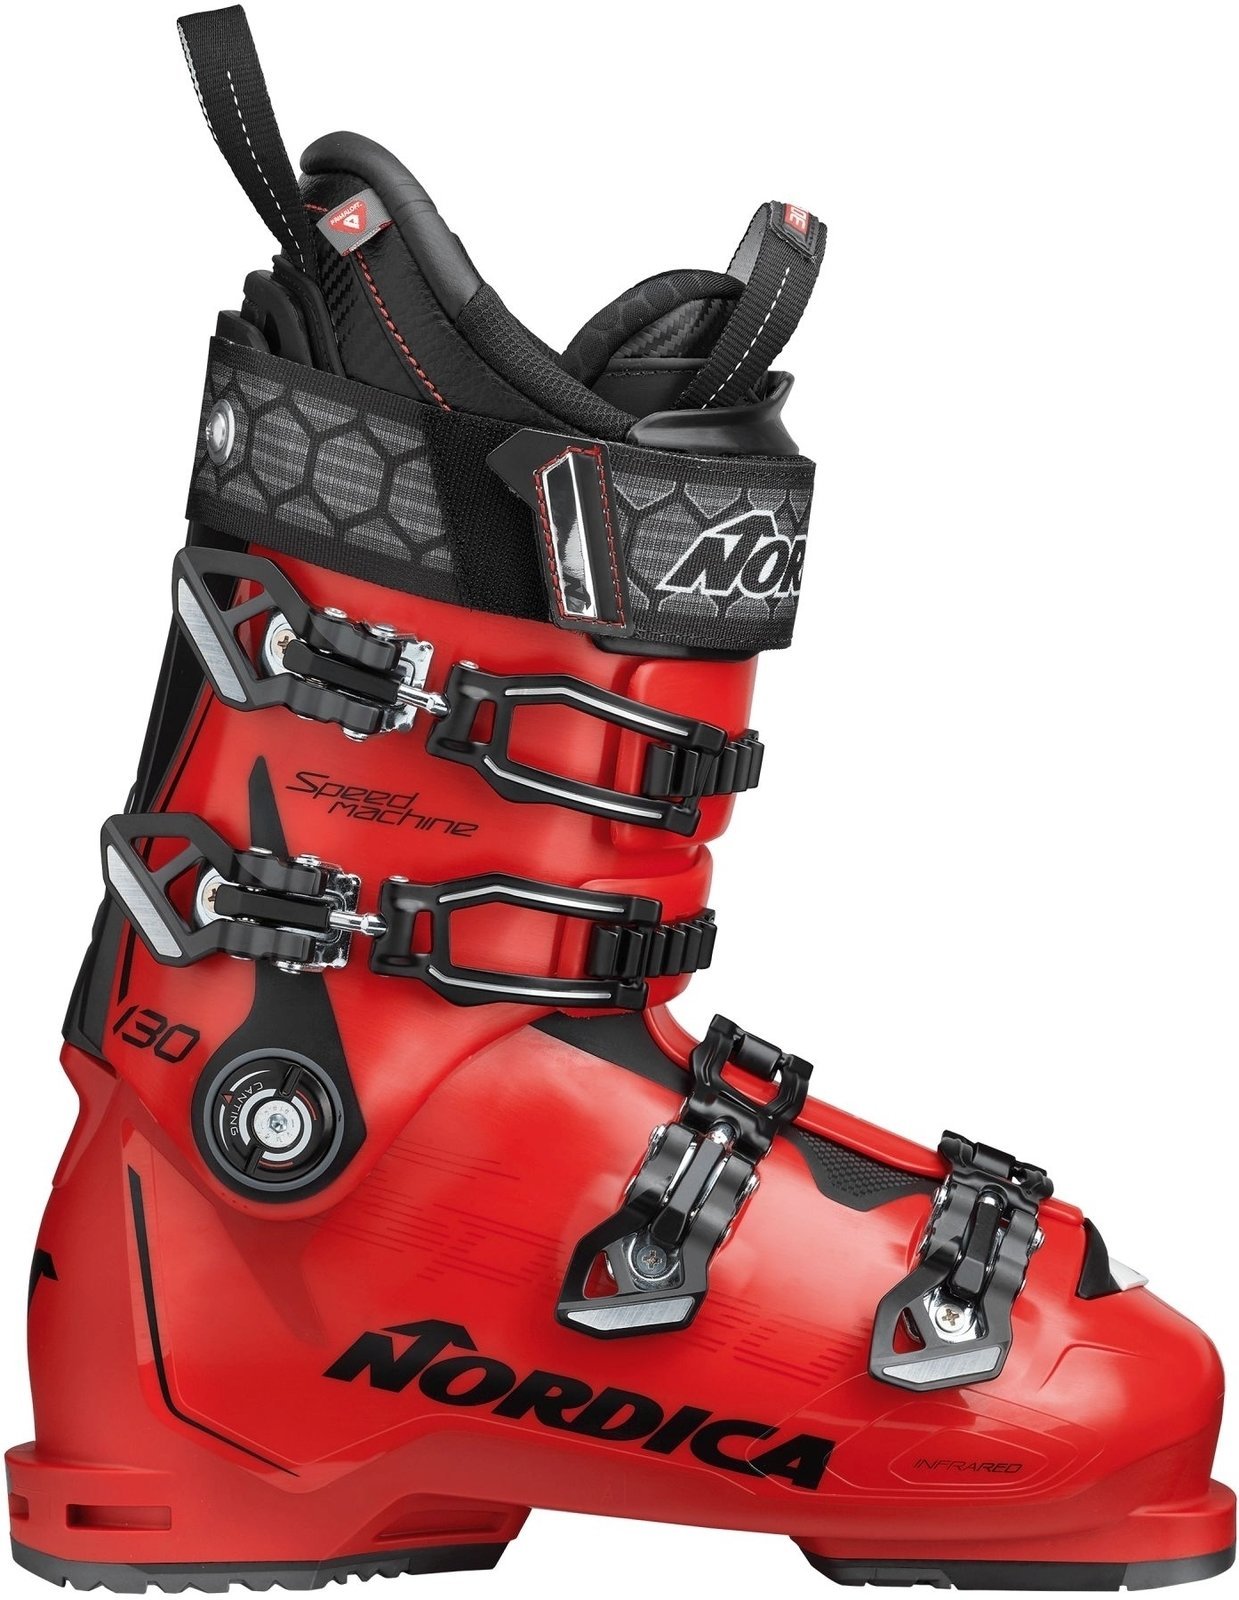 Alpine Ski Boots Nordica Speedmachine Red-Black 280 Alpine Ski Boots